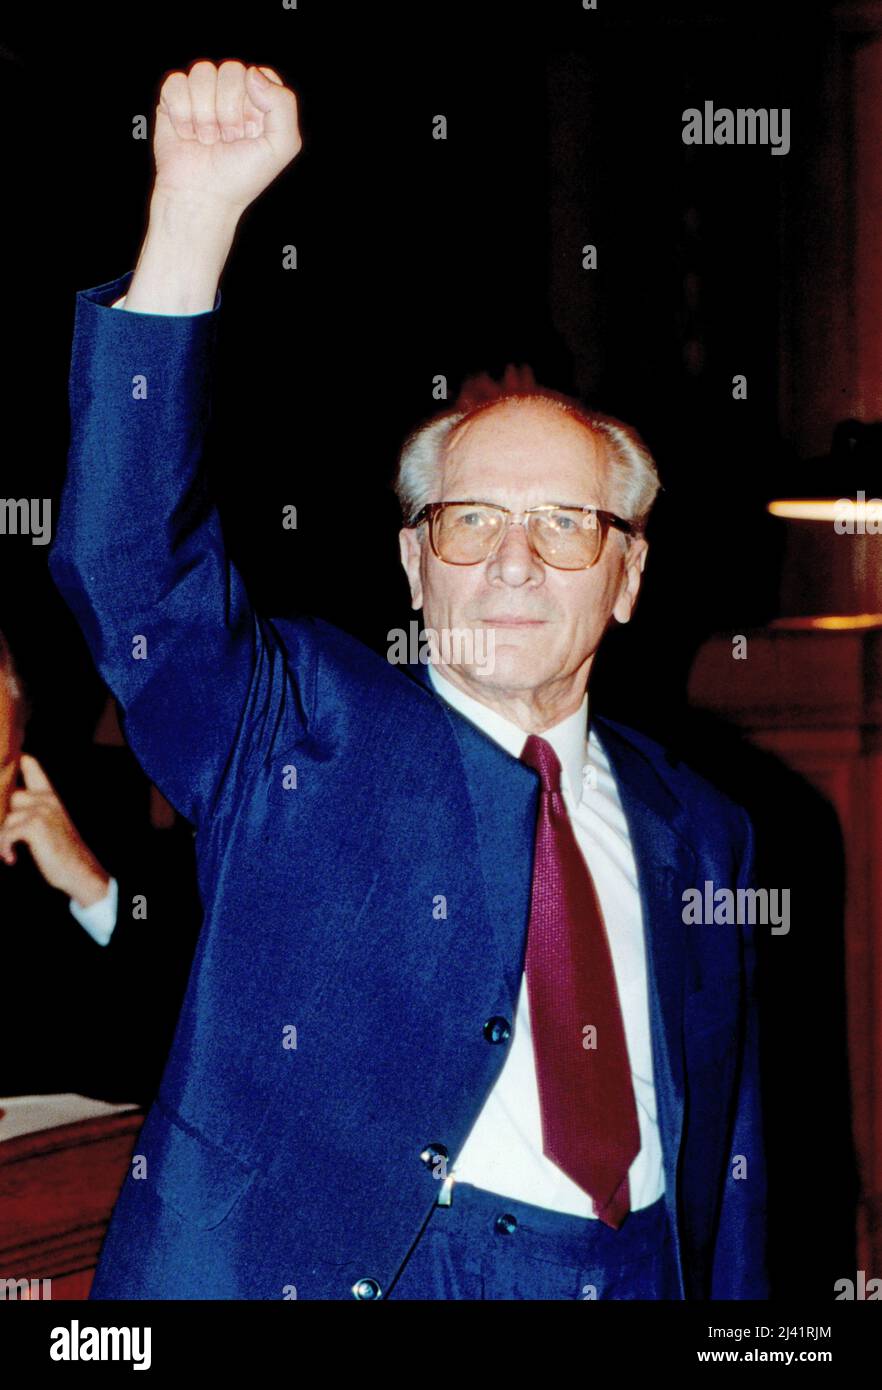 Erich Honecker, ehemaliger Generalsekretär des Zentralkomitees der SED und Staatsratsvorsitzender der DDR, mit erhobener Faust auf dem Weg zu seinem Prozess vor dem Landgericht in Berlin, Deutschland 1992. Foto Stock